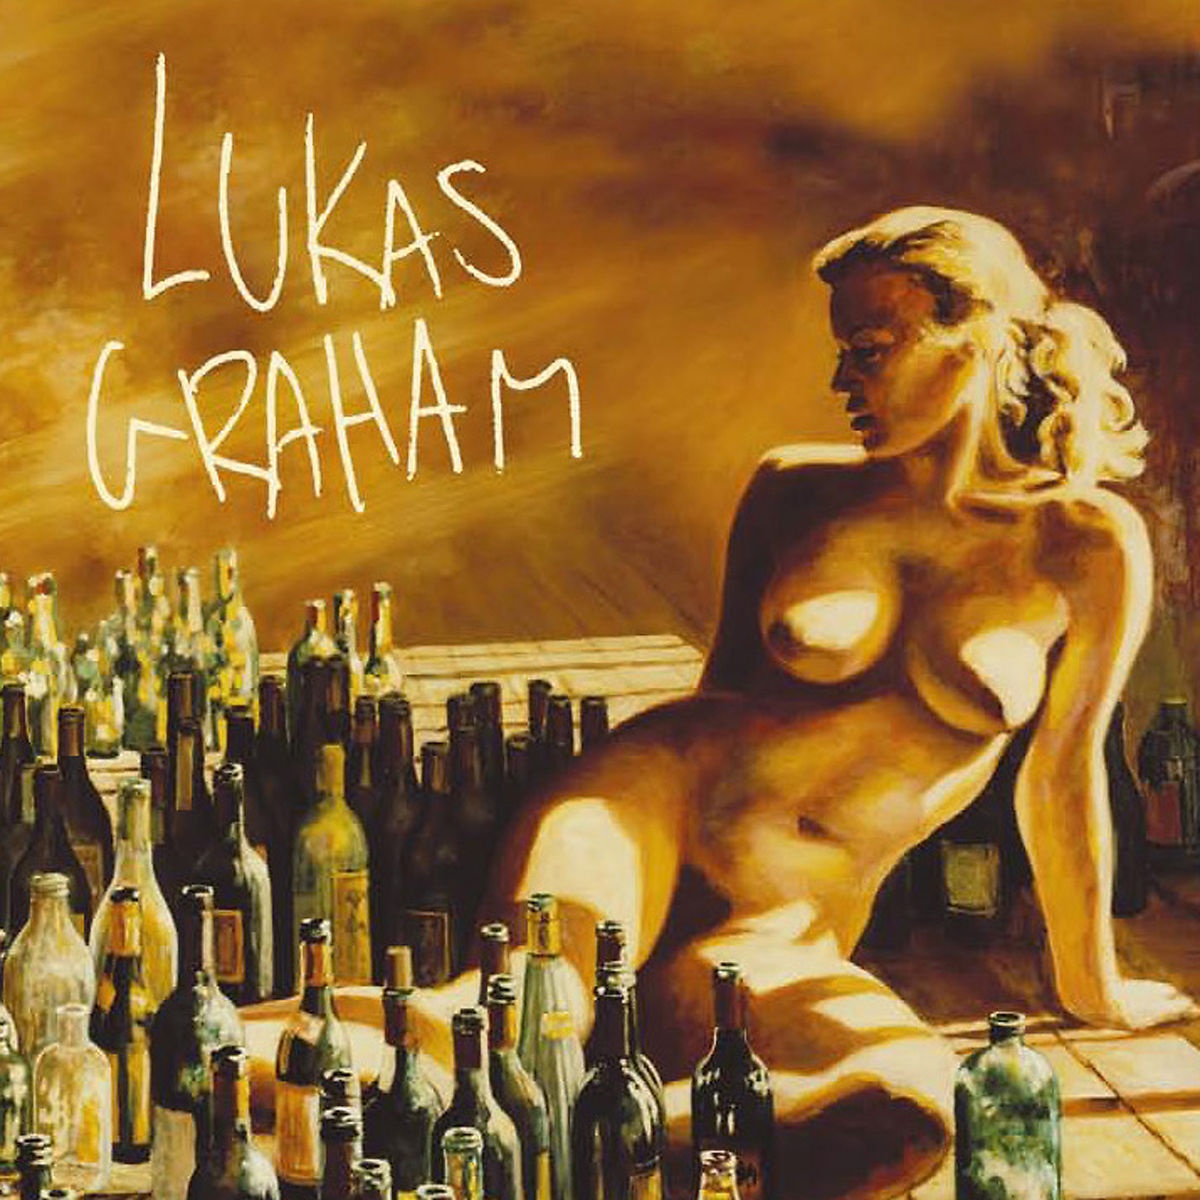 Lukas Graham - Lukas Graham. (CD)